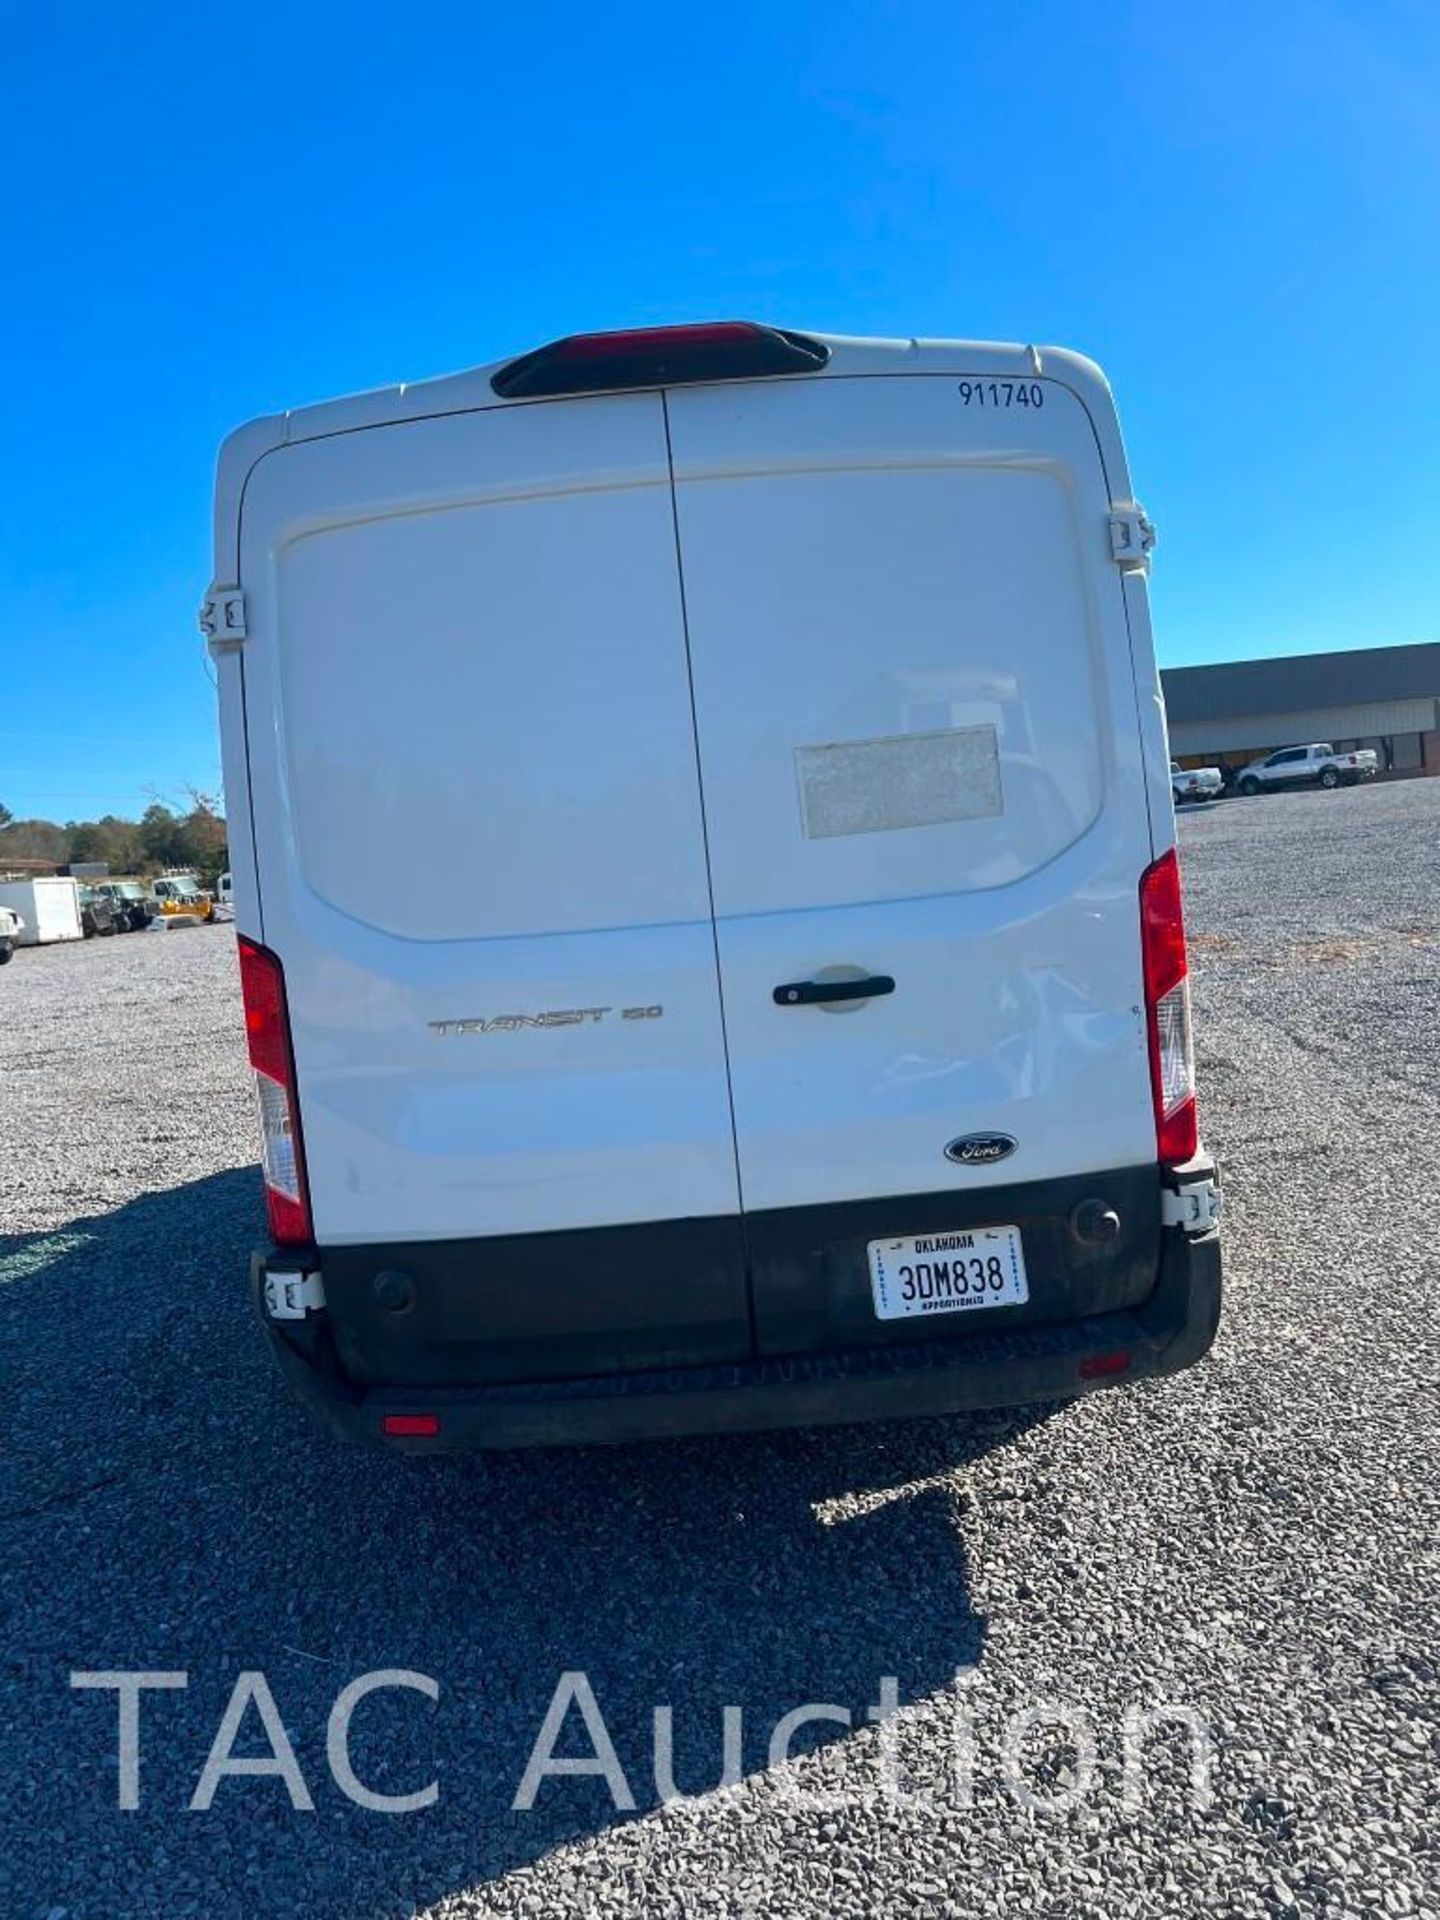 2019 Ford Transit 150 Cargo Van - Image 4 of 22